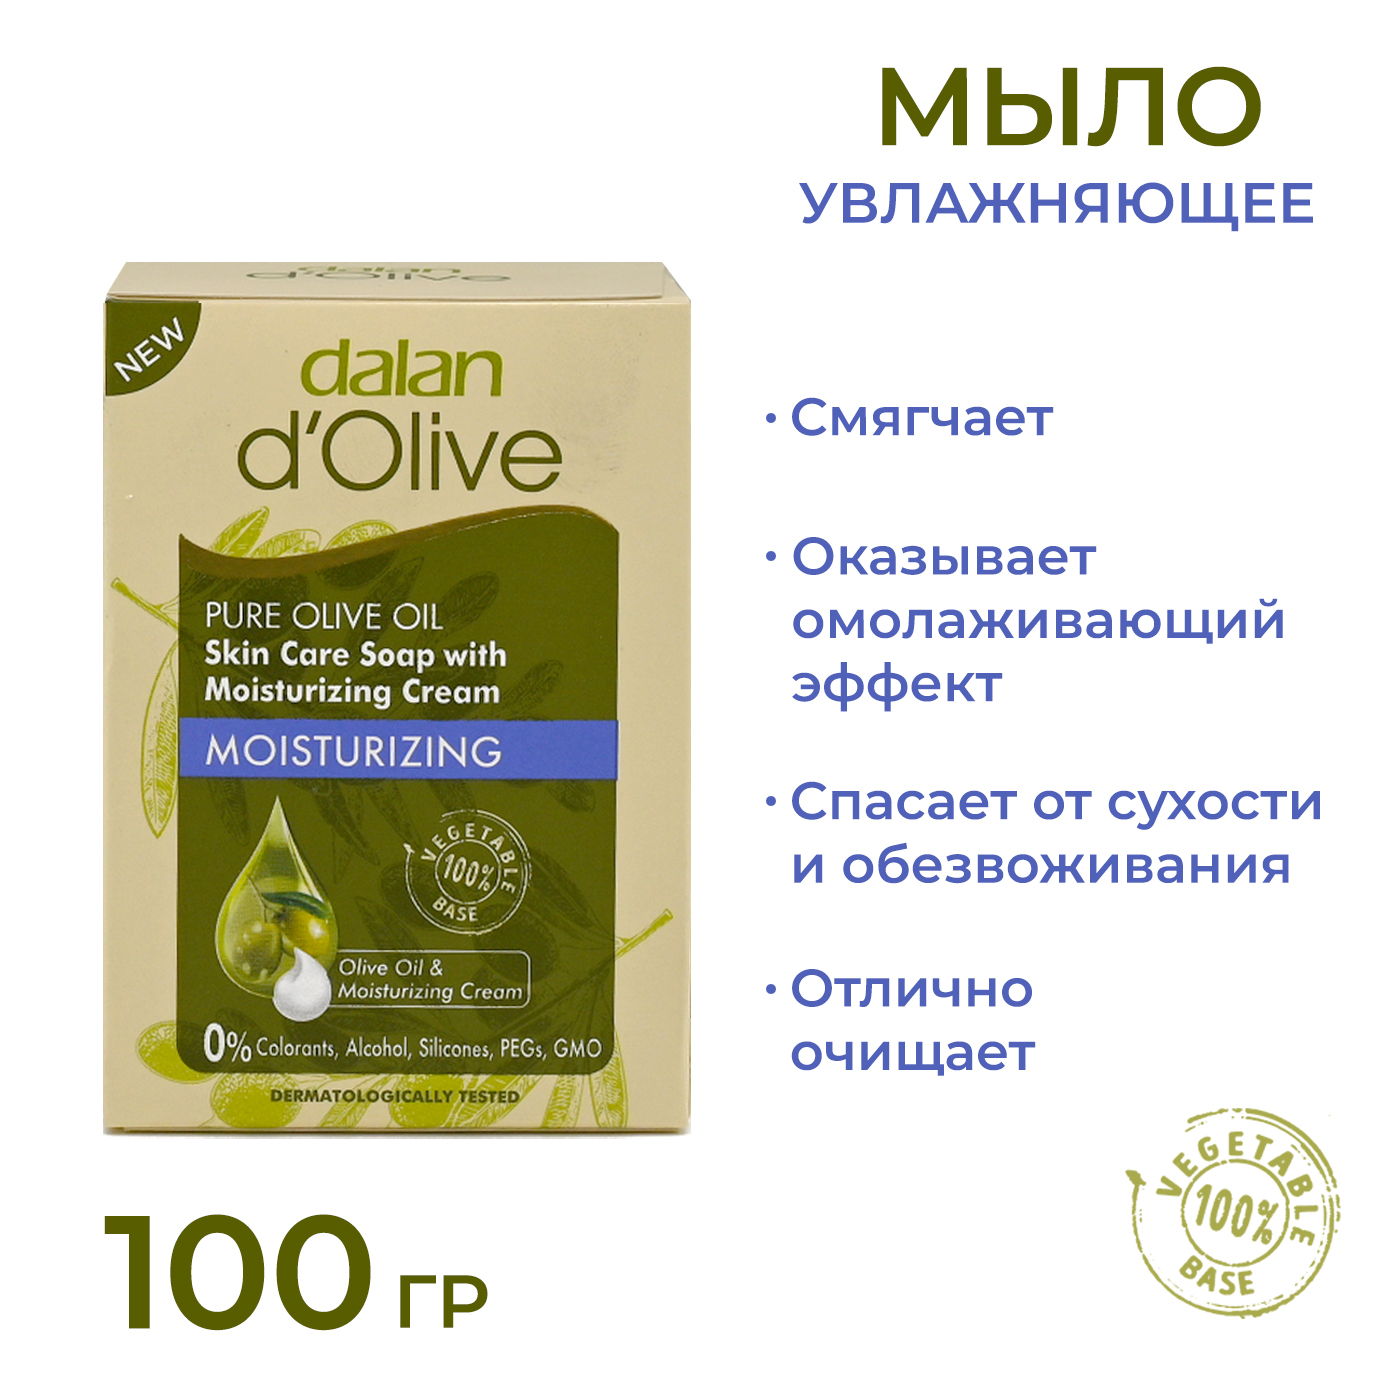 Мыло кусковое Dalan d'Olive Увлажняющее с кремом, 100 г мыло глицериновое dalan therapy mediterranean olive oil 5 70г